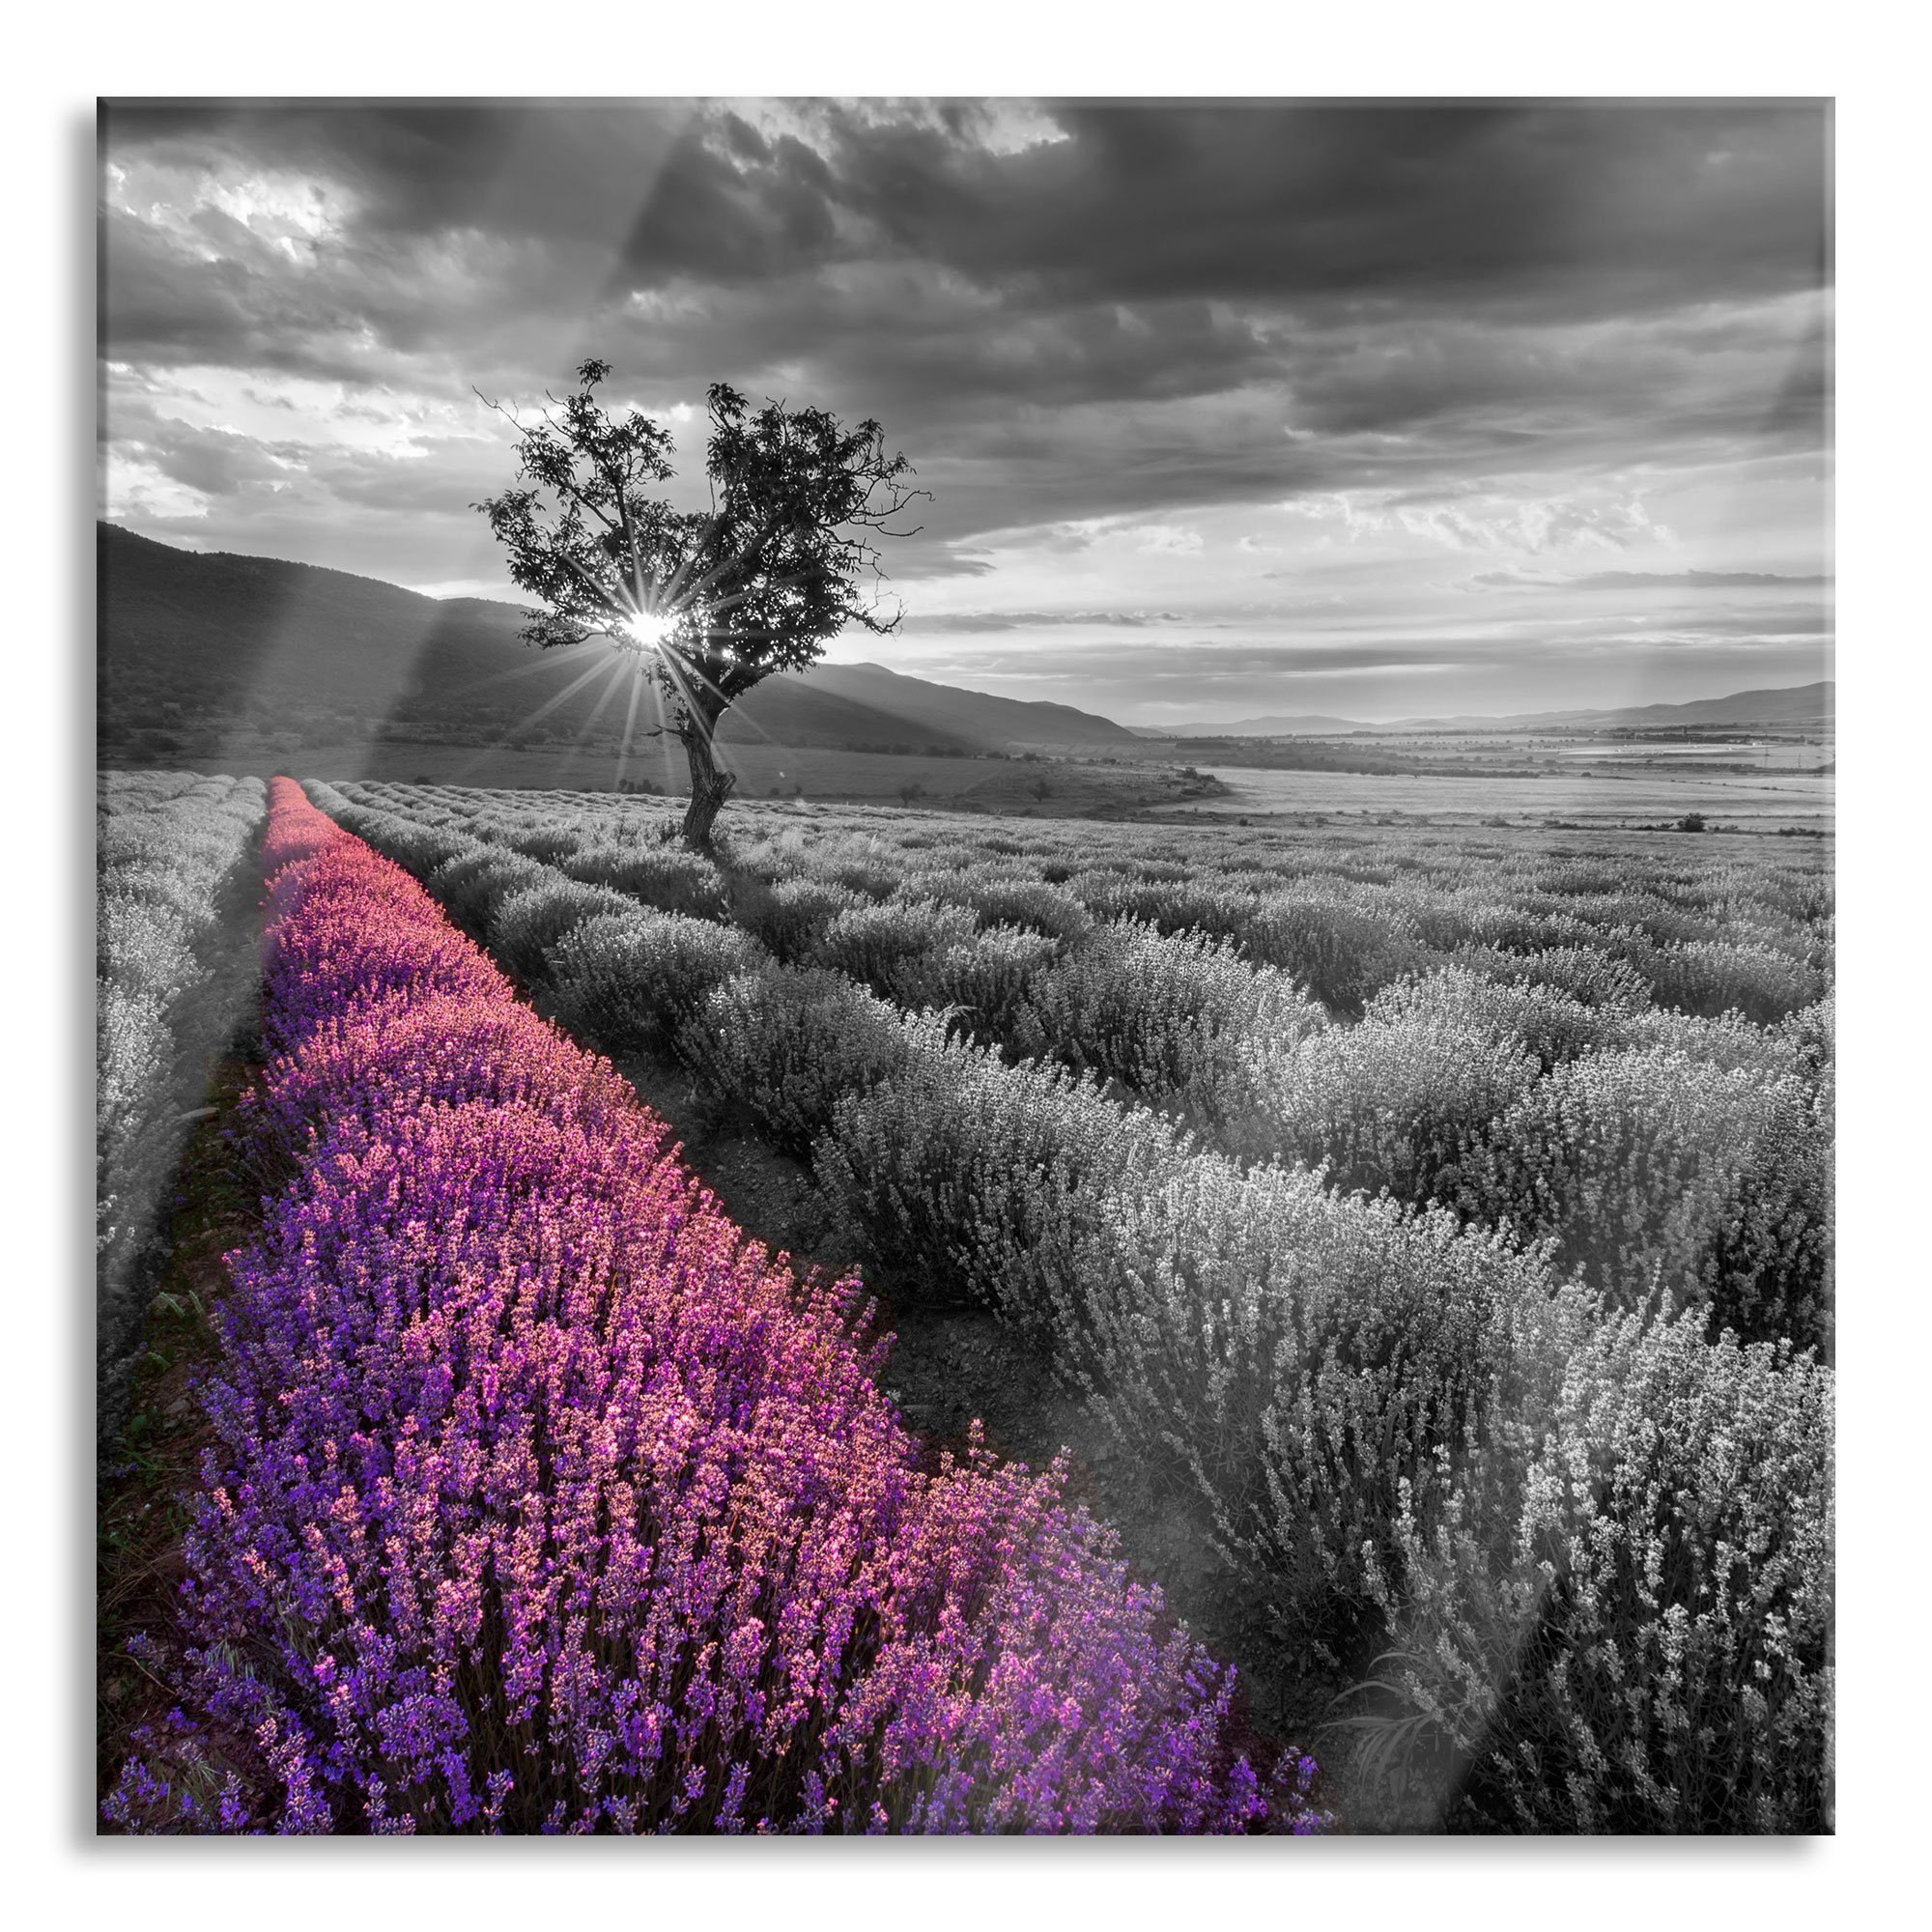 Pixxprint Glasbild Lavendelfeld mit Baum, Lavendelfeld mit Baum (1 St), Glasbild aus Echtglas, inkl. Aufhängungen und Abstandshalter